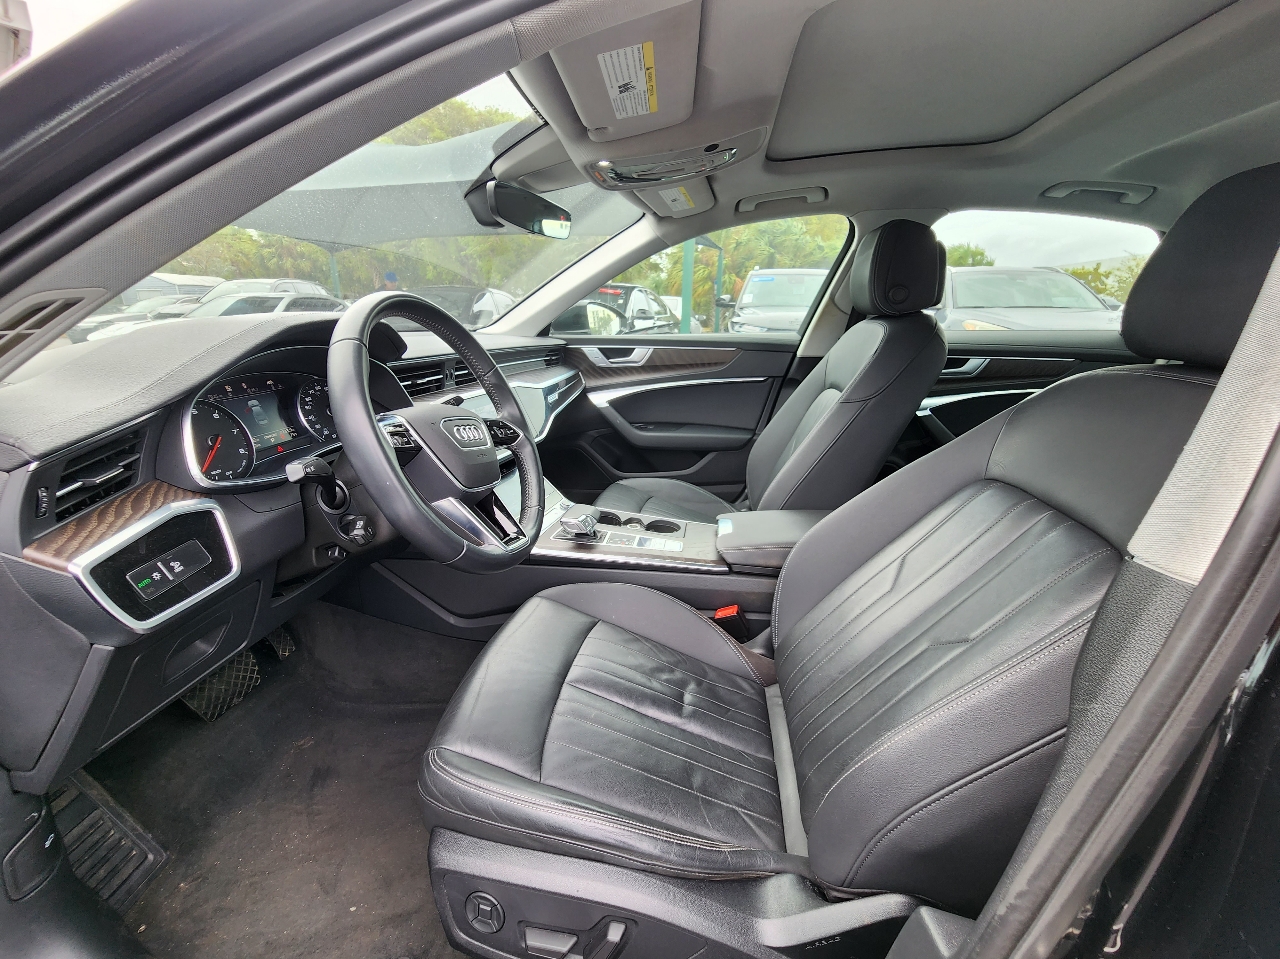 2019 AUDI A6 Sedan - $27,999